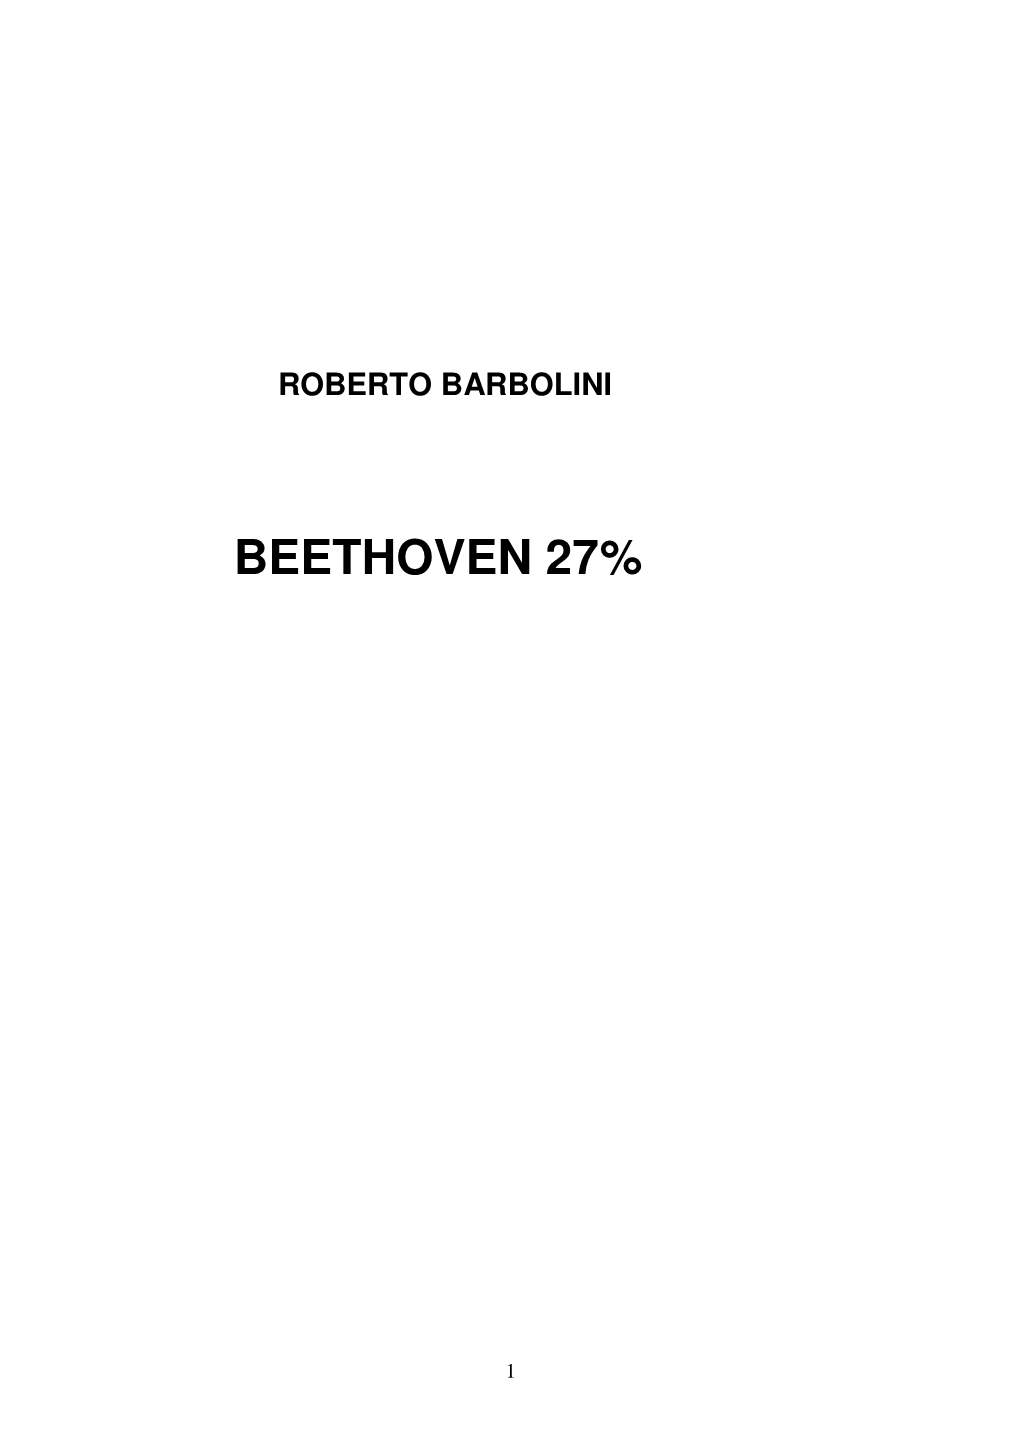 Beethoven 27%